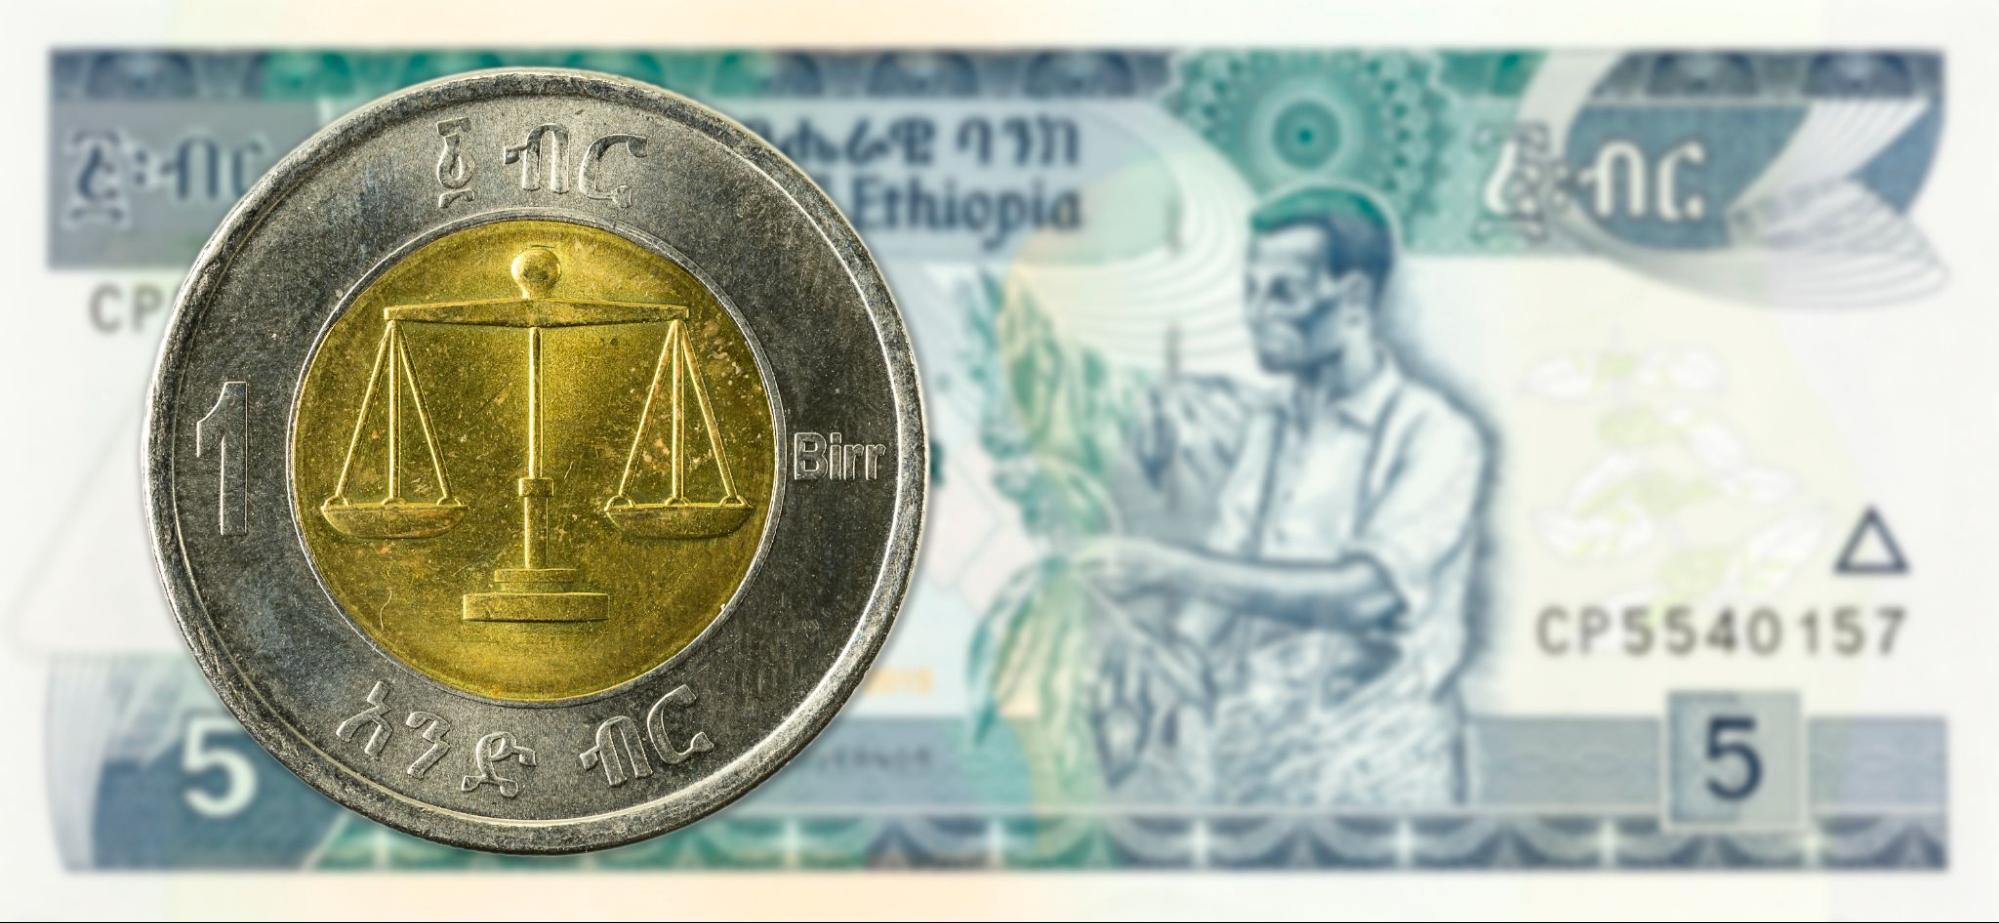 1 birr coin against 5 ethiopian birr bank note obverse